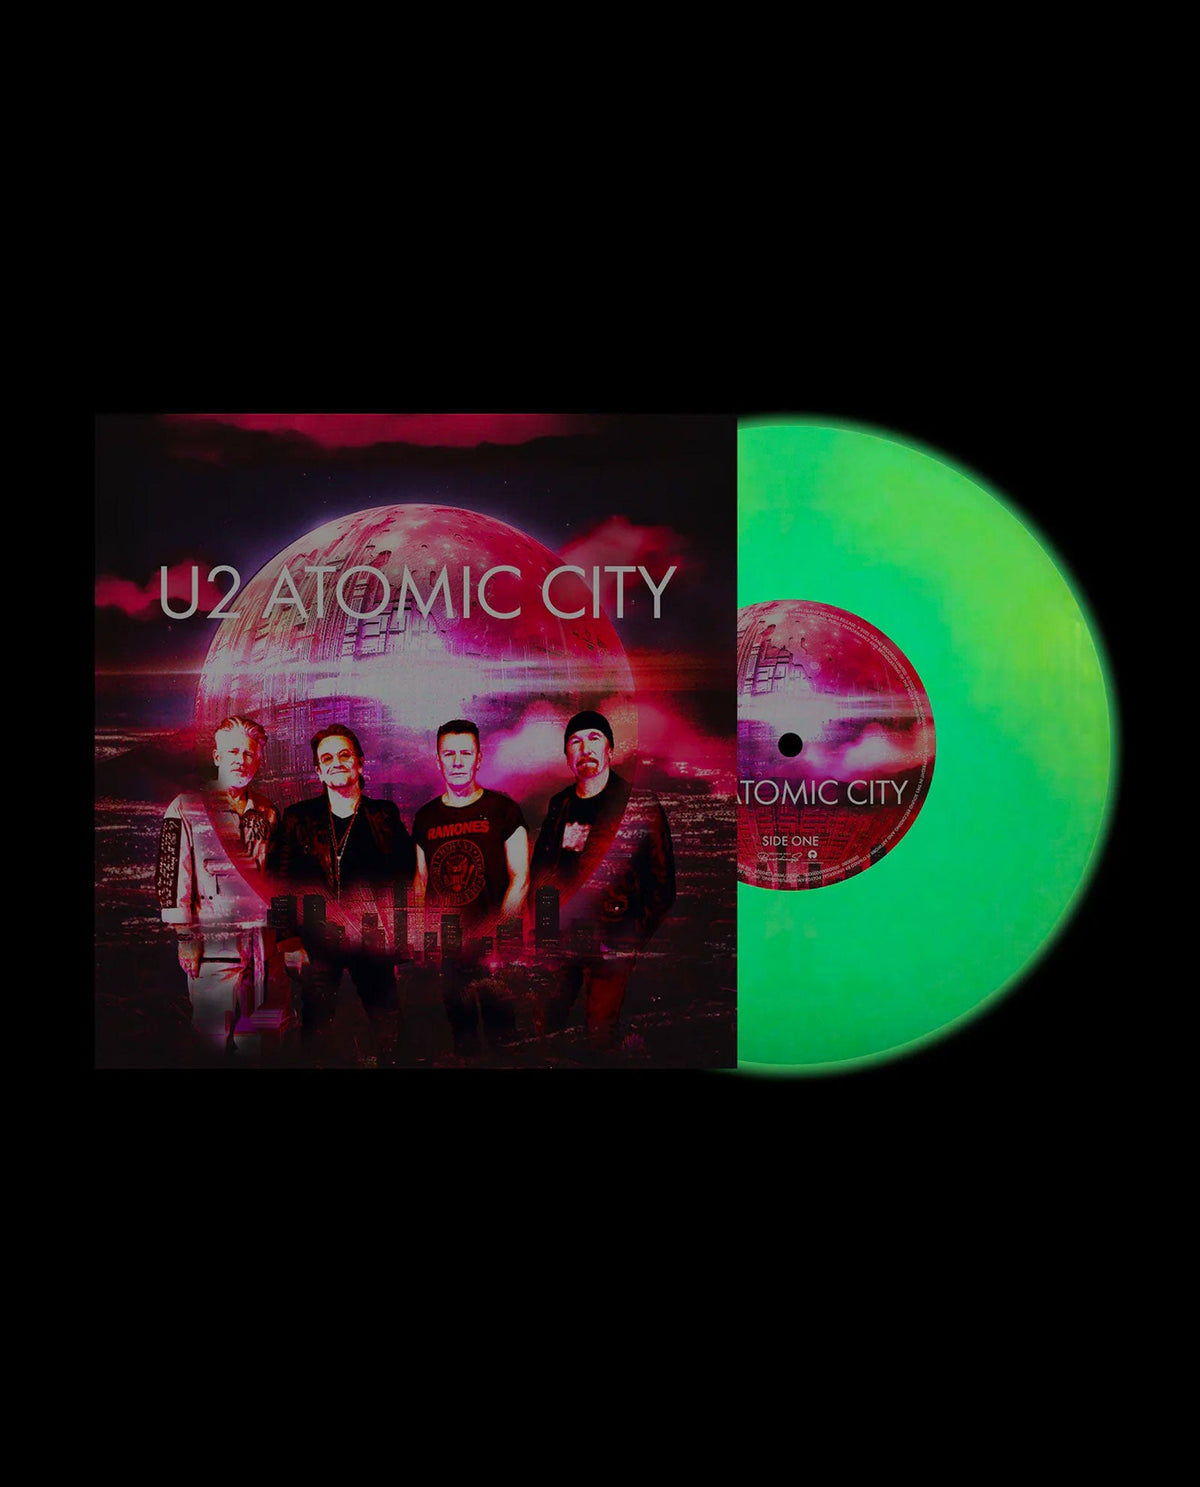 U2 - Vinilo 7" Fotoluminiscente "Atomic City" Edición limitada - D2fy · Rocktud - Rocktud